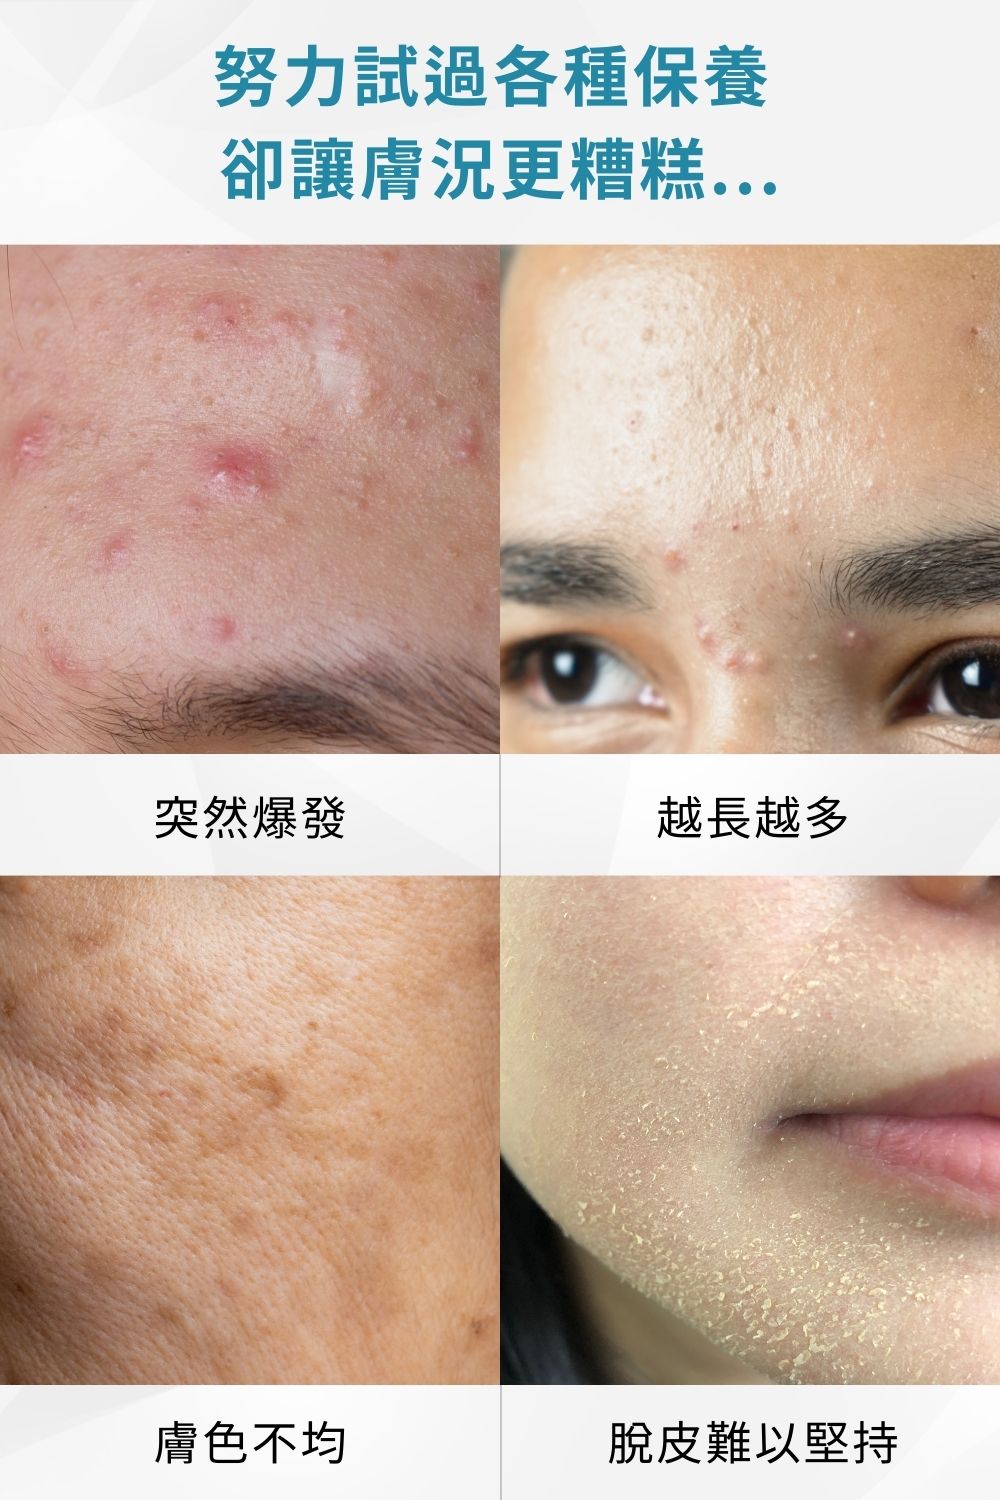 DRX達特仕的肌膚護理活動專區系列-極速祛痘超級亮膚組，5大控油成分、緊緻毛孔─拍照新動力，加強控油、面皰預防，提亮且保護肌膚，讓肌膚更提亮，極速祛痘超級亮膚組是你的好選擇。